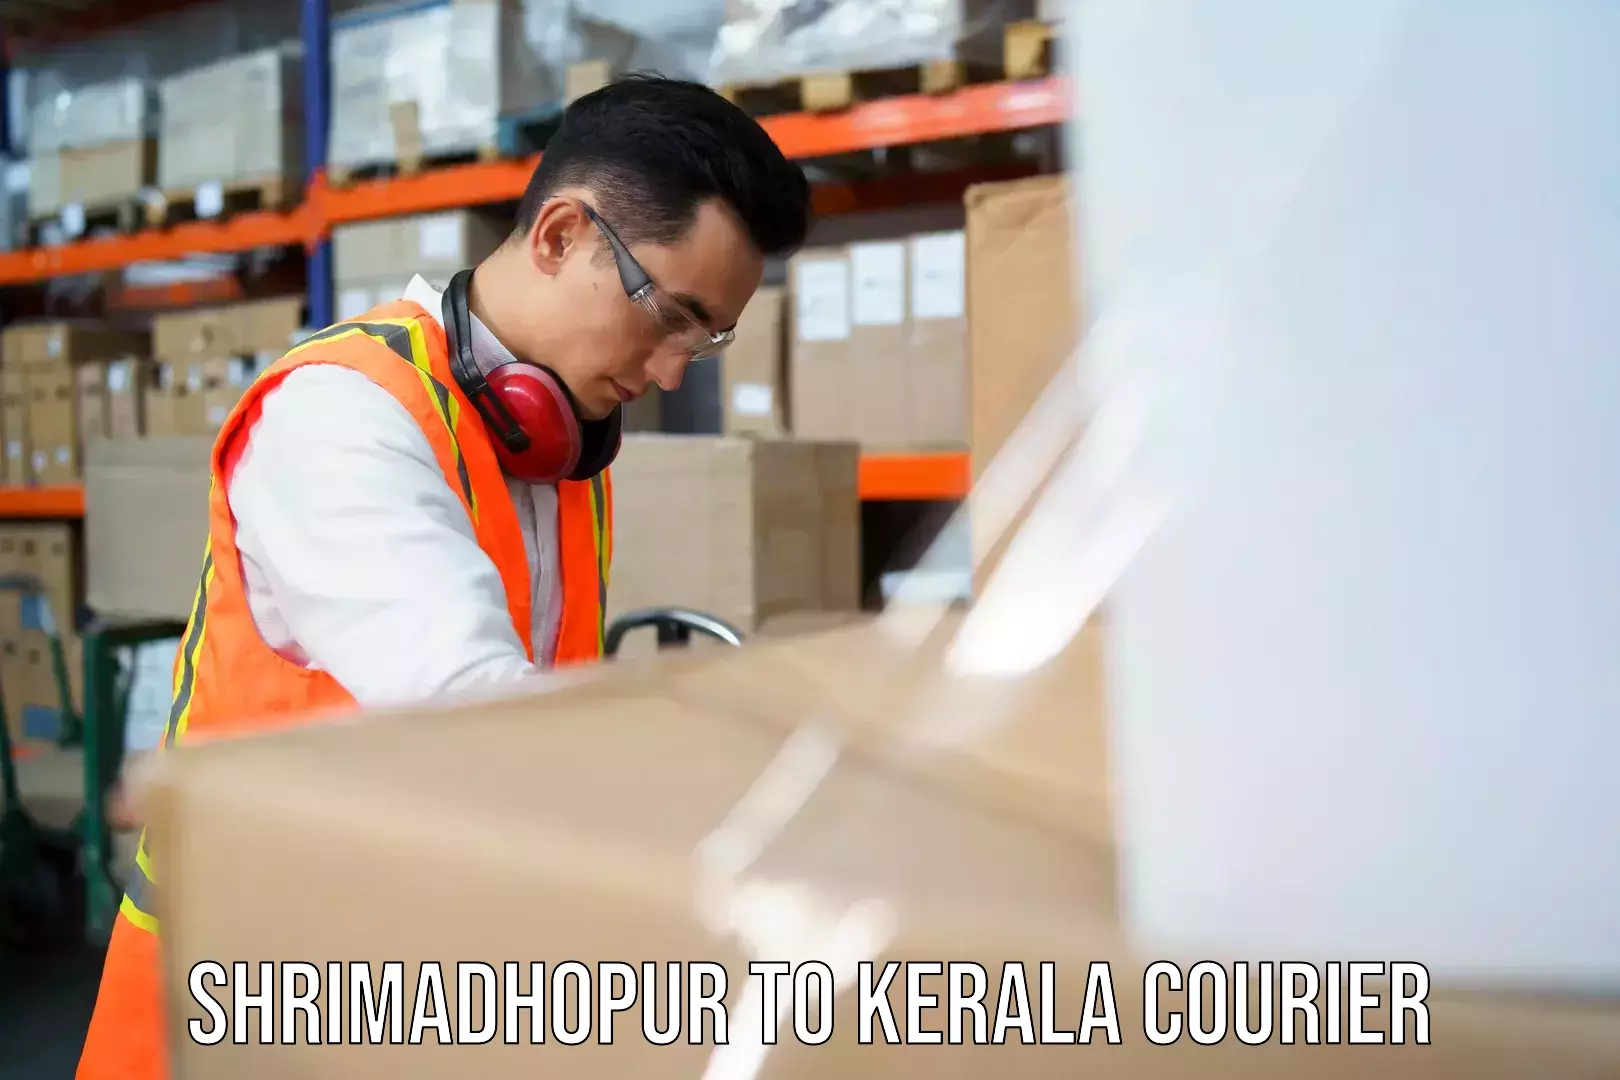 Subscription-based courier Shrimadhopur to Kanjiramattom